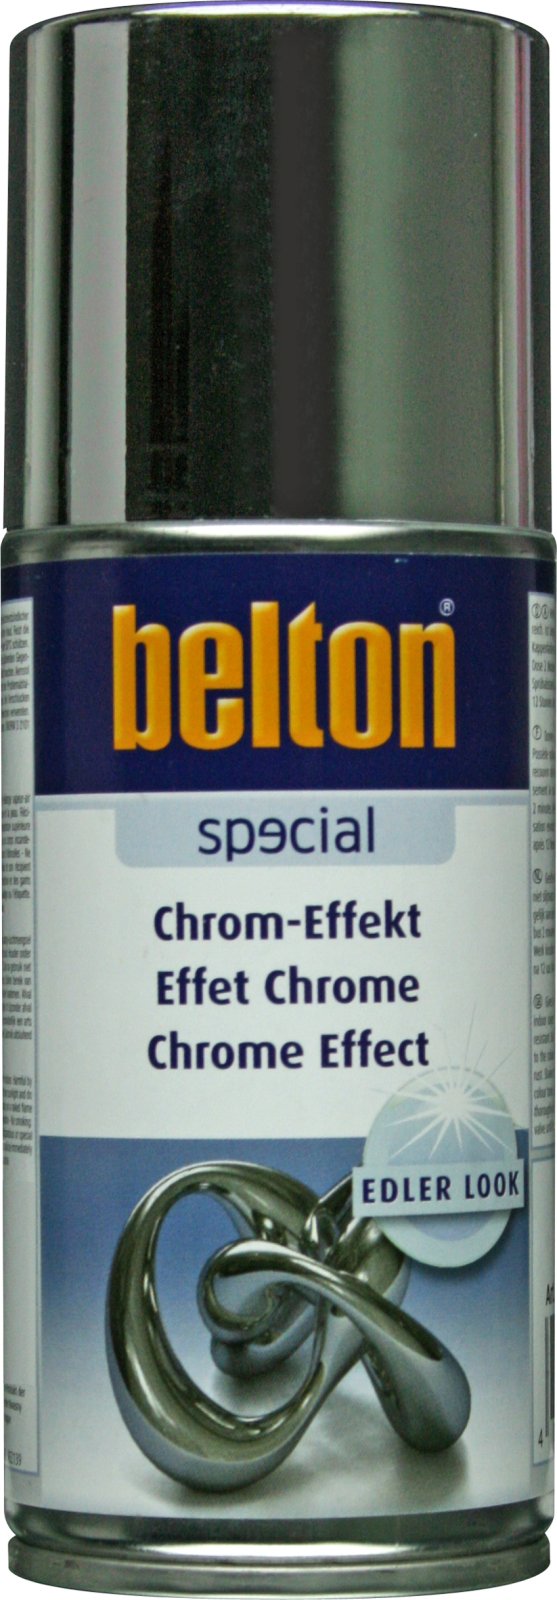 belton Chrom-Effekt-Spray, 150ml